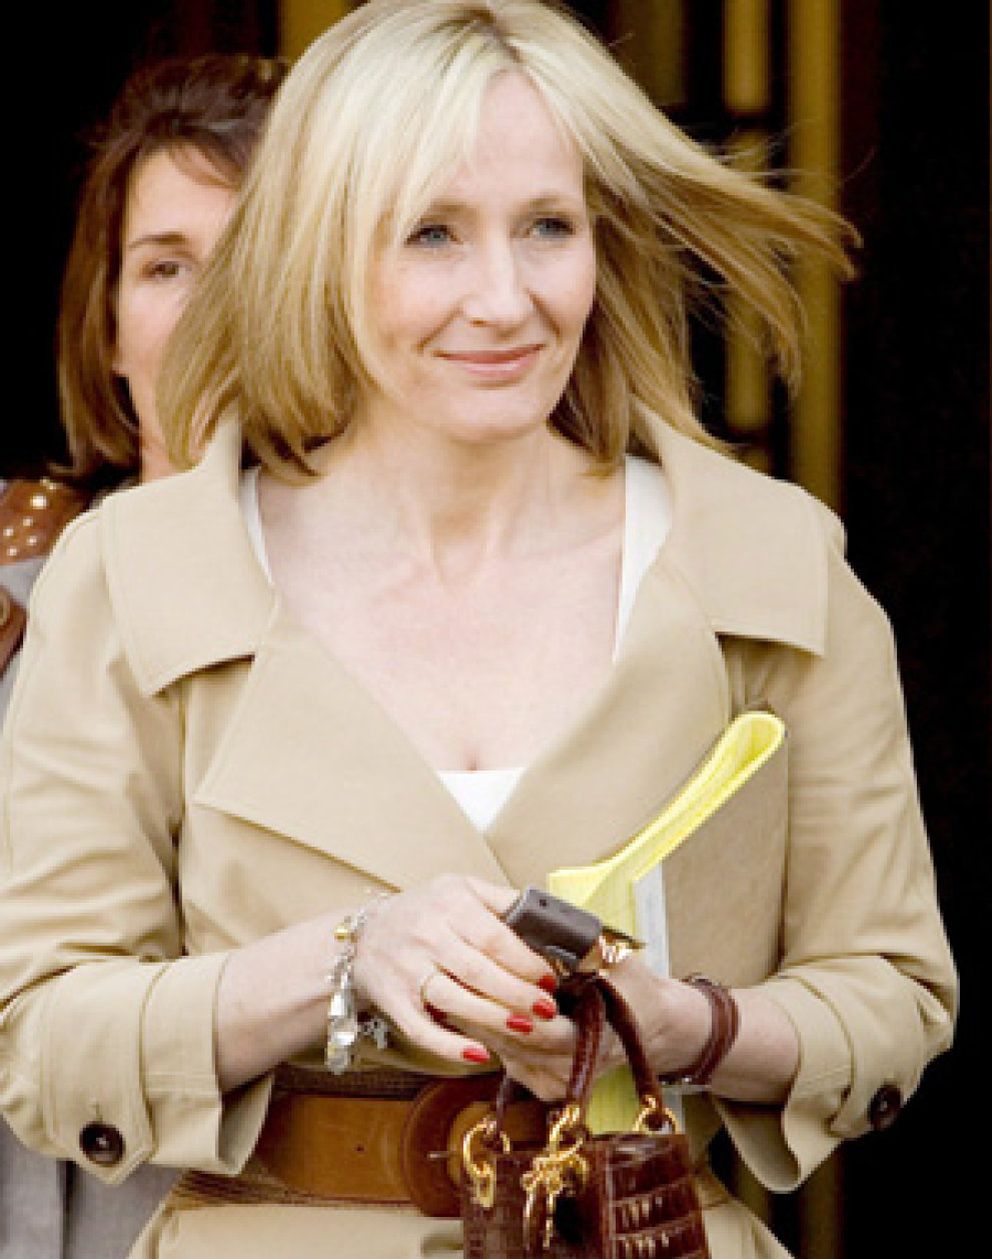 Foto: J.K. Rowling publicará en diciembre un libor de cuentos de hadas, cuyos ingresos donará a una organización benefica